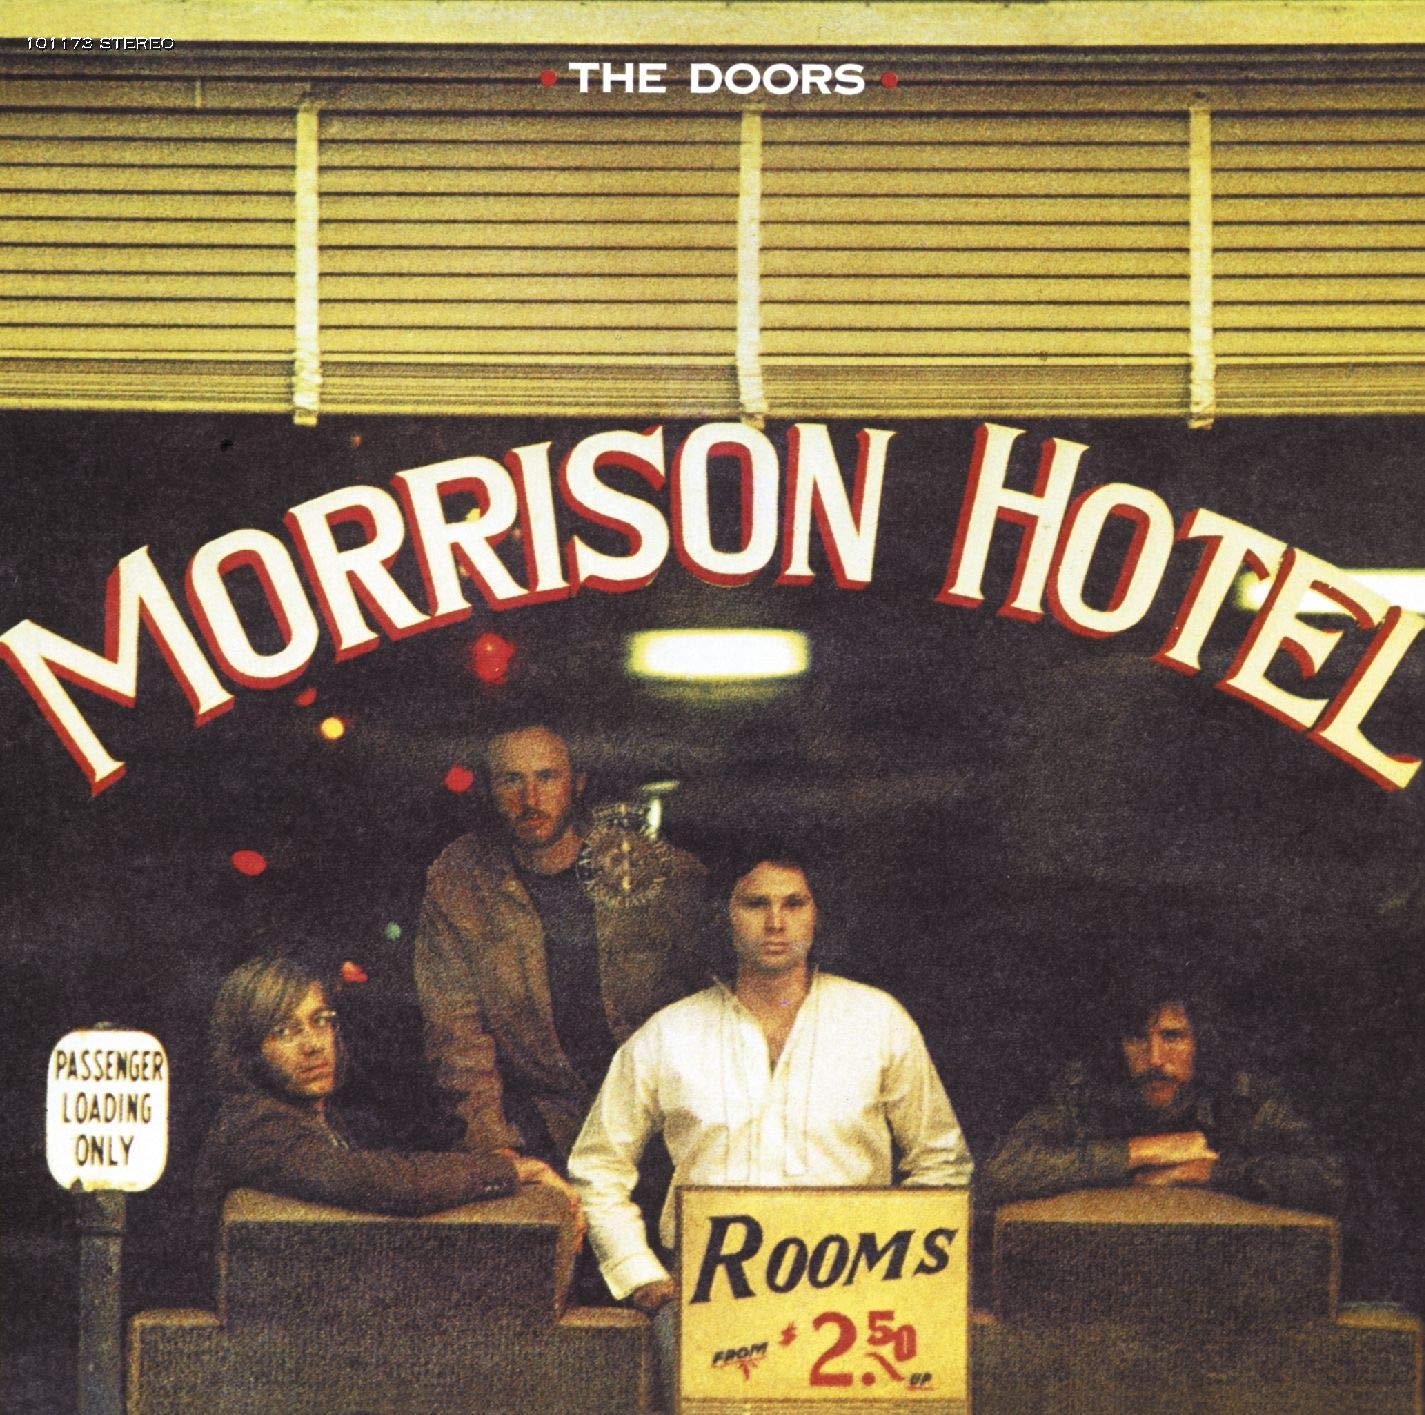 The Doors "Morrison Hotel" LP